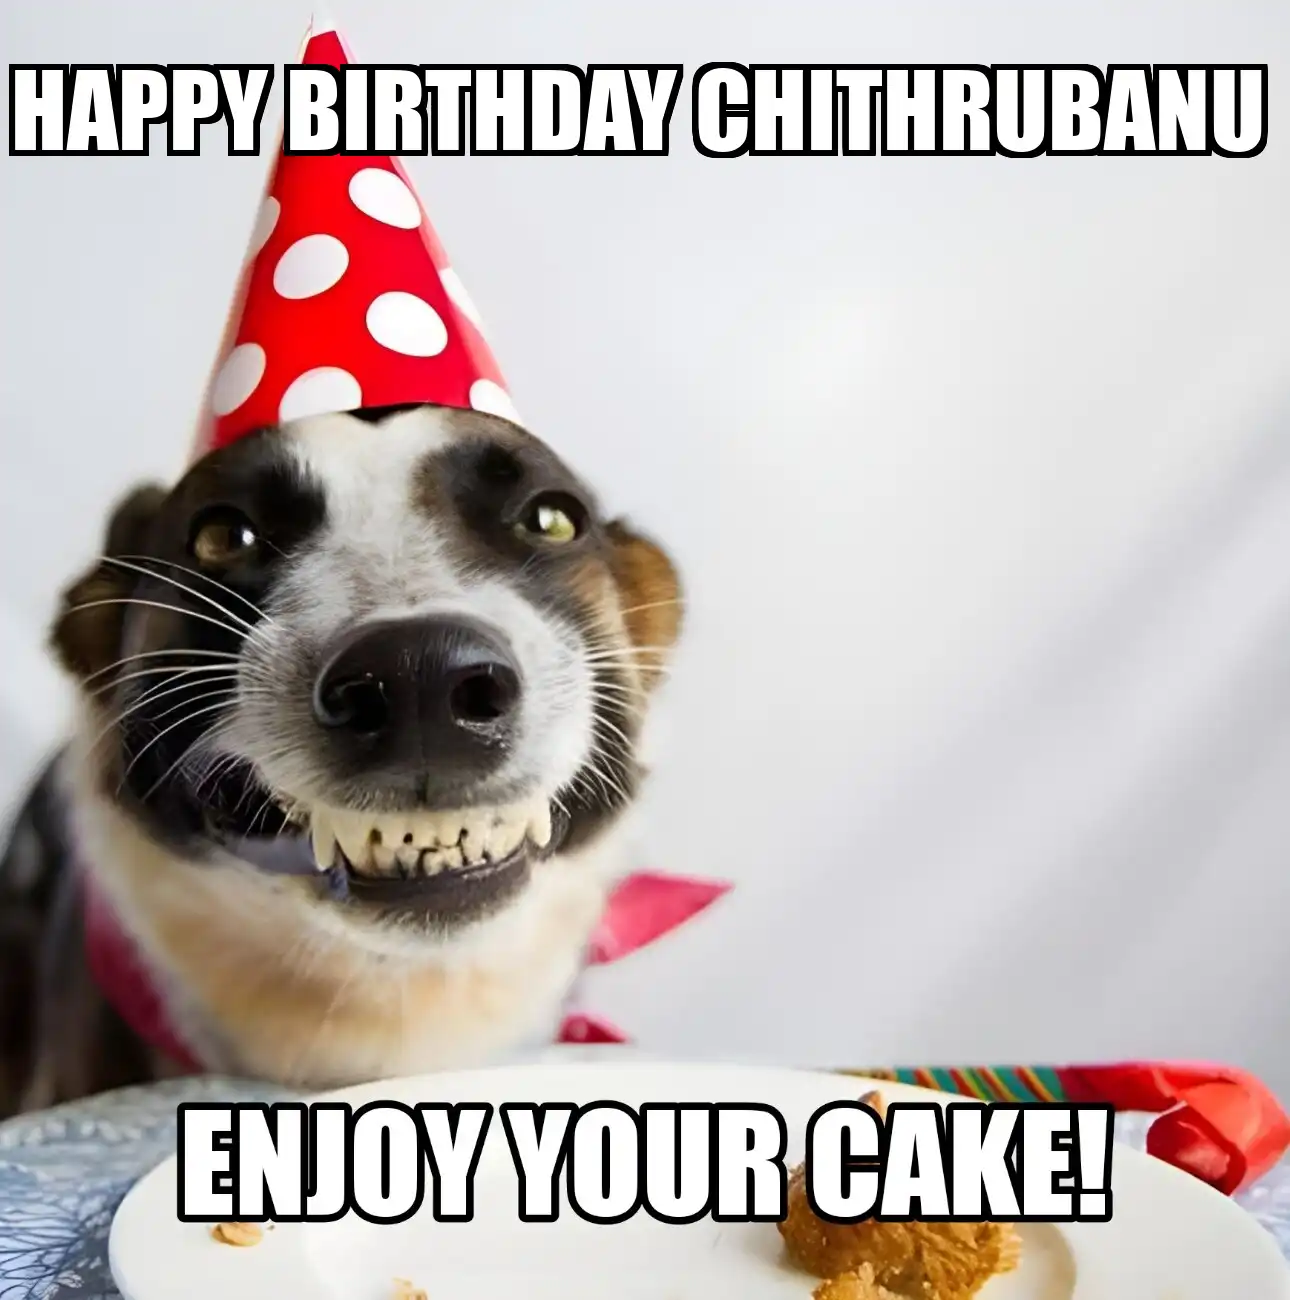 Happy Birthday Chithrubanu Enjoy Your Cake Dog Meme